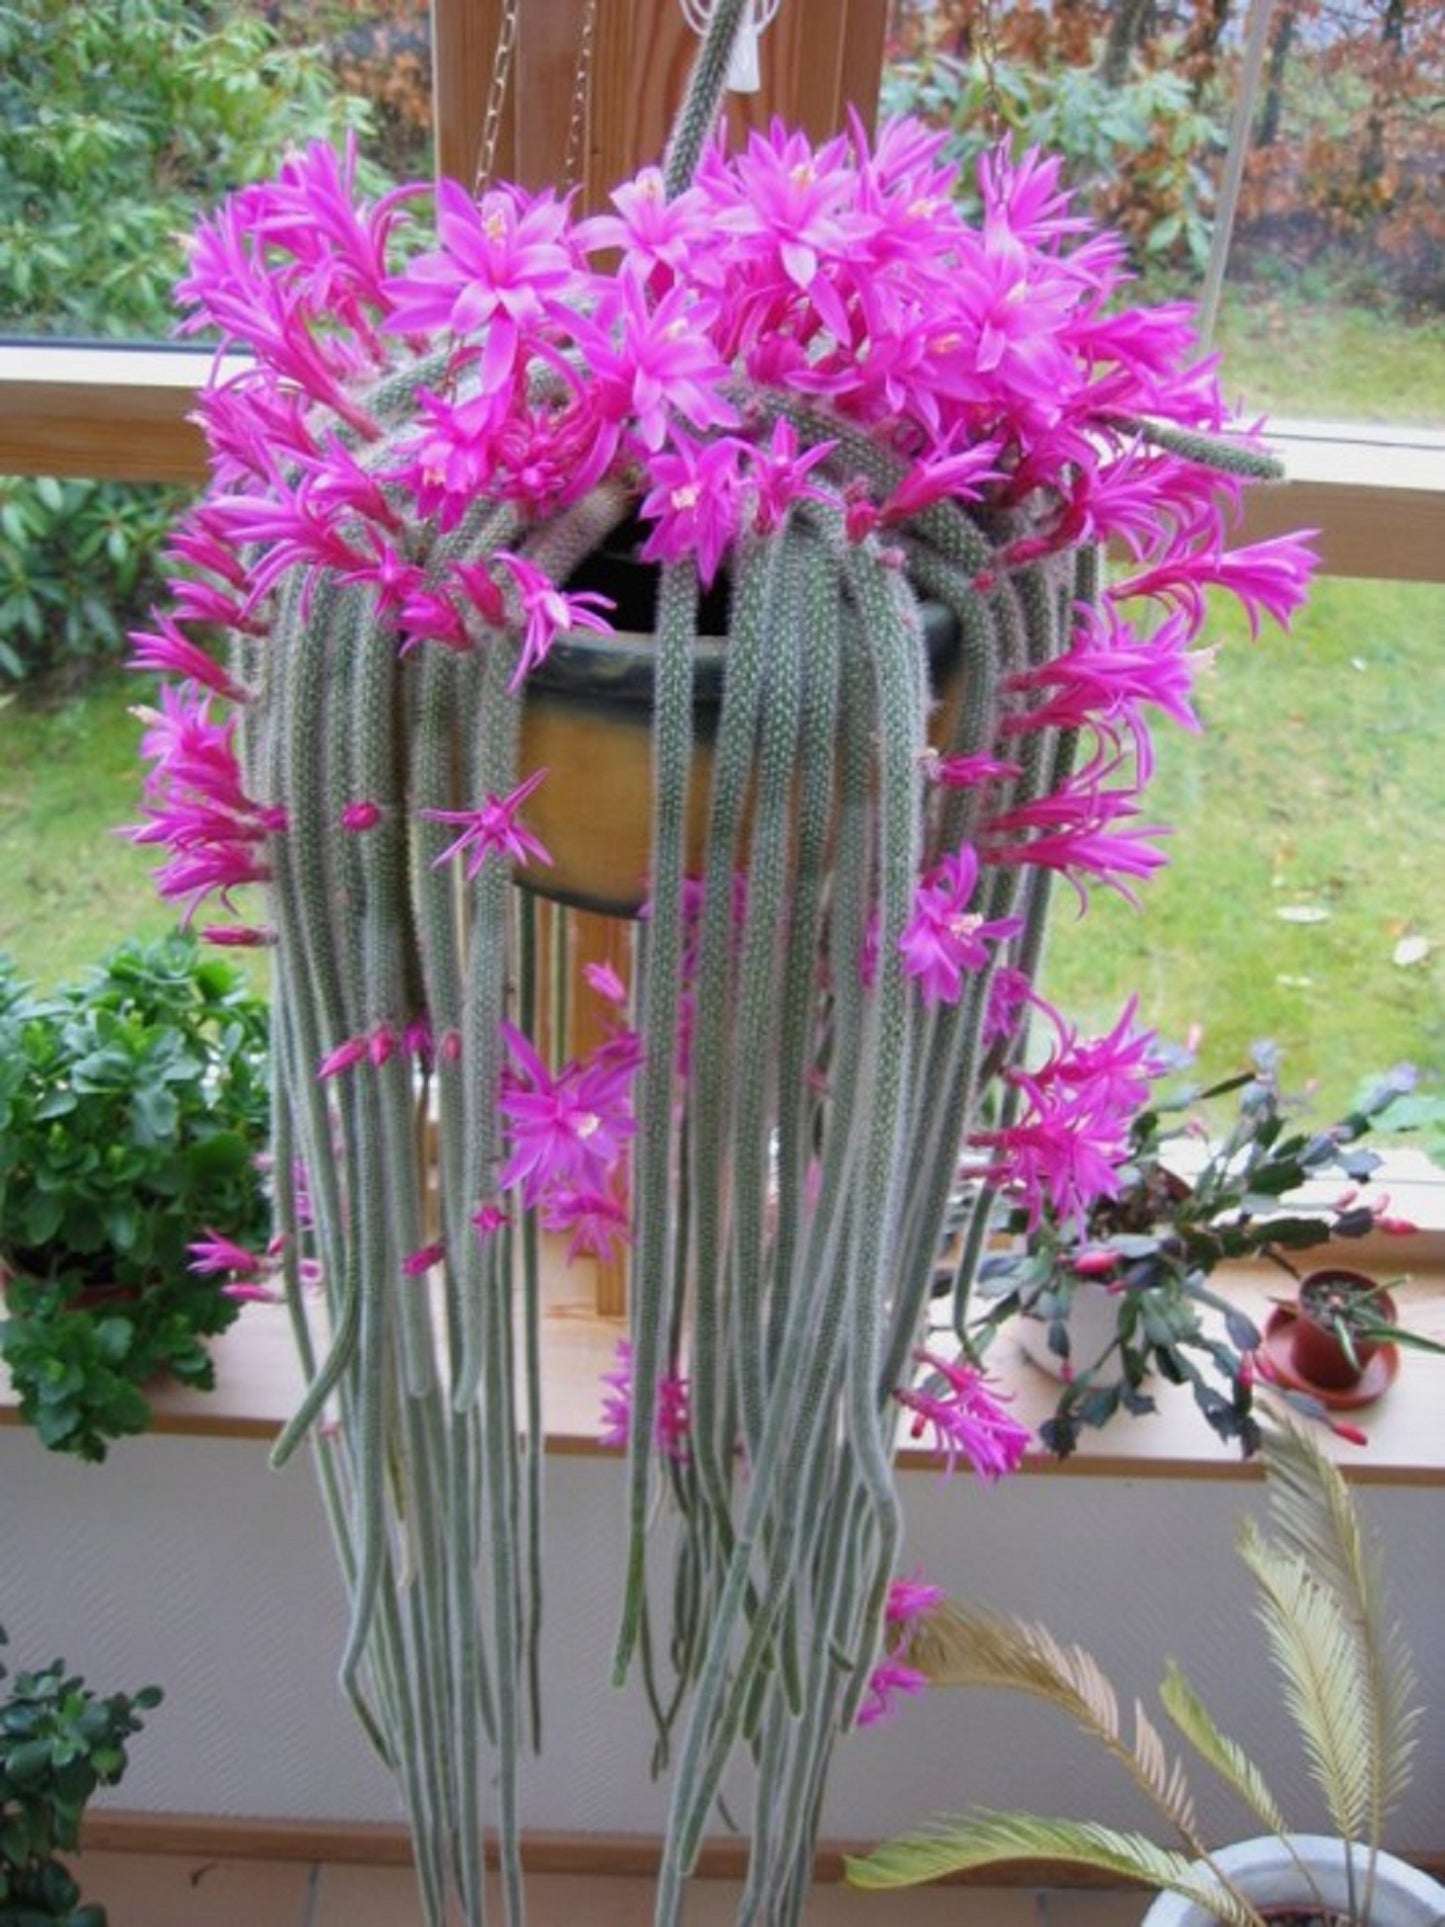 Aporocactus Flagelliformis ~ Disocactus Flagelliformis ~ Stunning Rat Tail Cactus ~ Pink Flowers ~ 5 Seeds ~